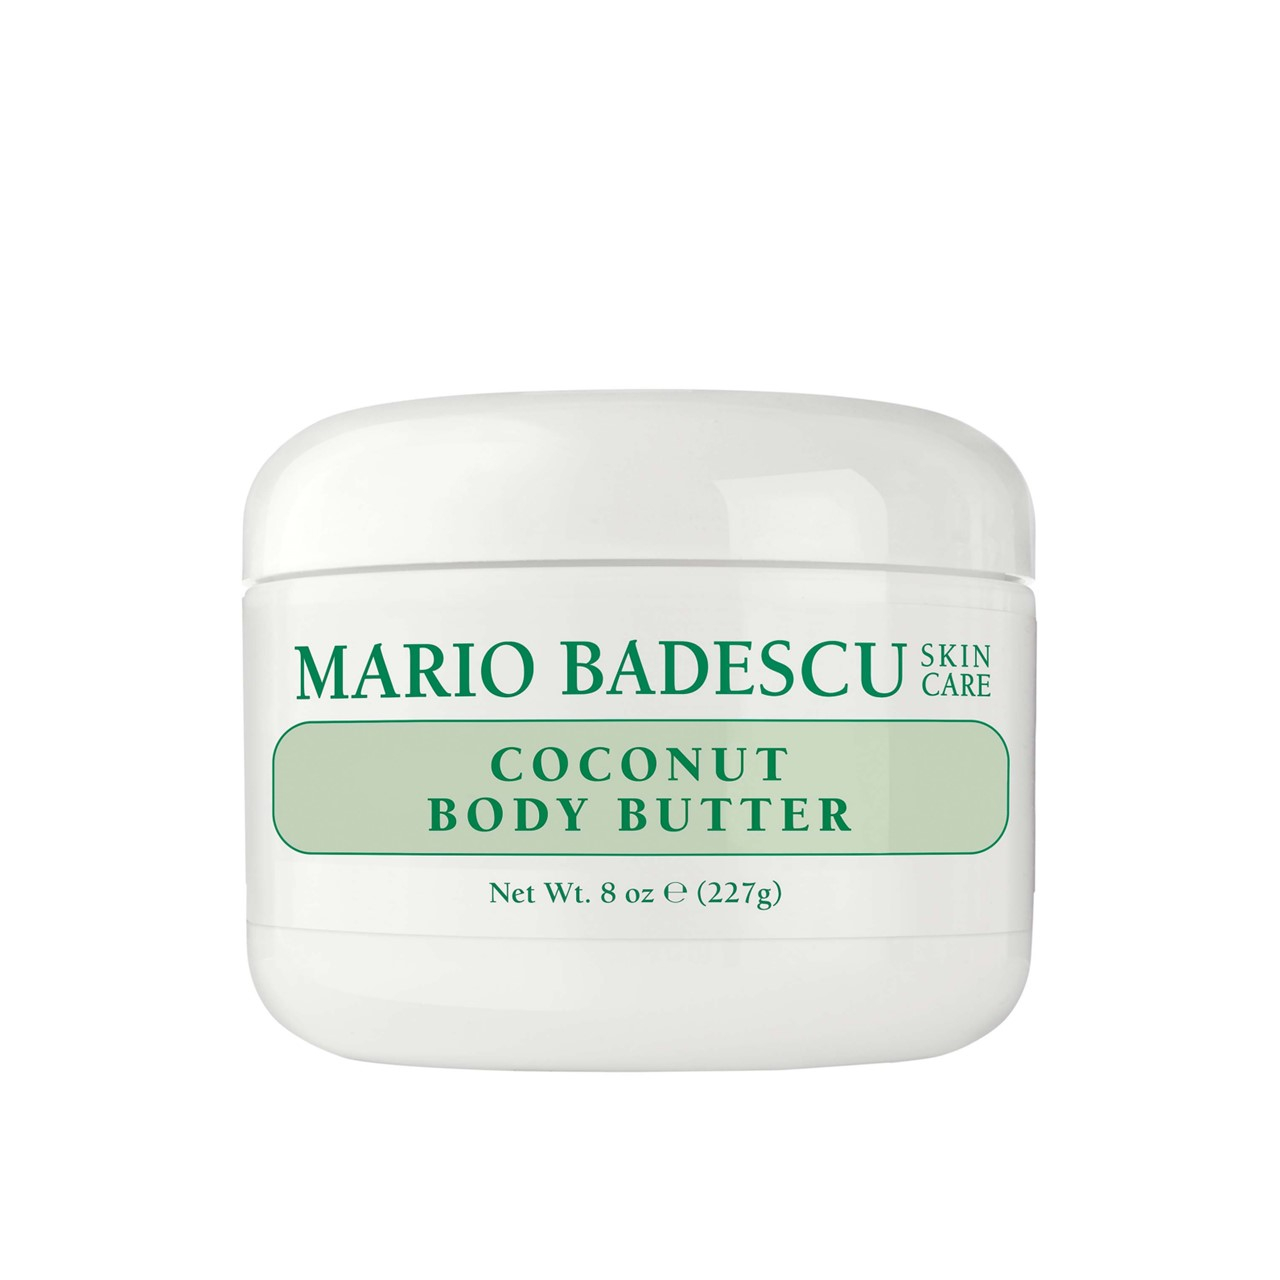 Mario Badescu Coconut Body Butter 227g (8 oz)